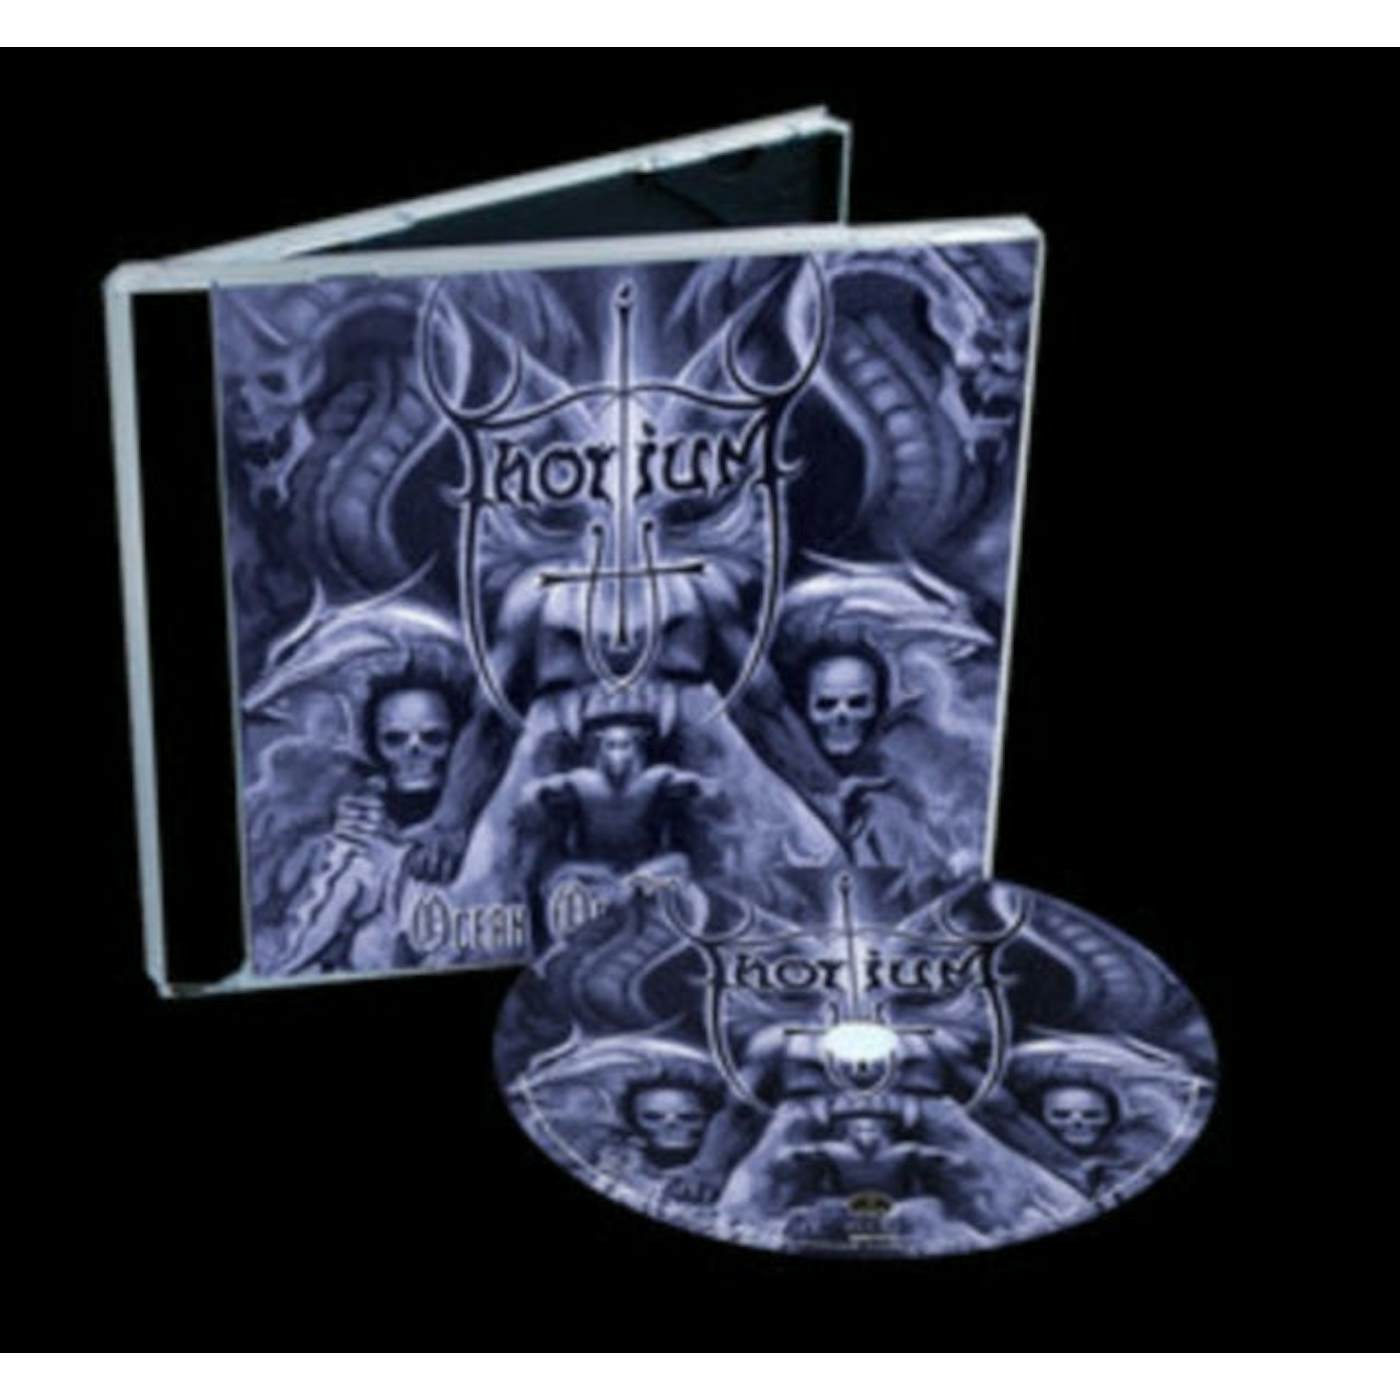 Thorium CD - Ocean Of Blasphemy